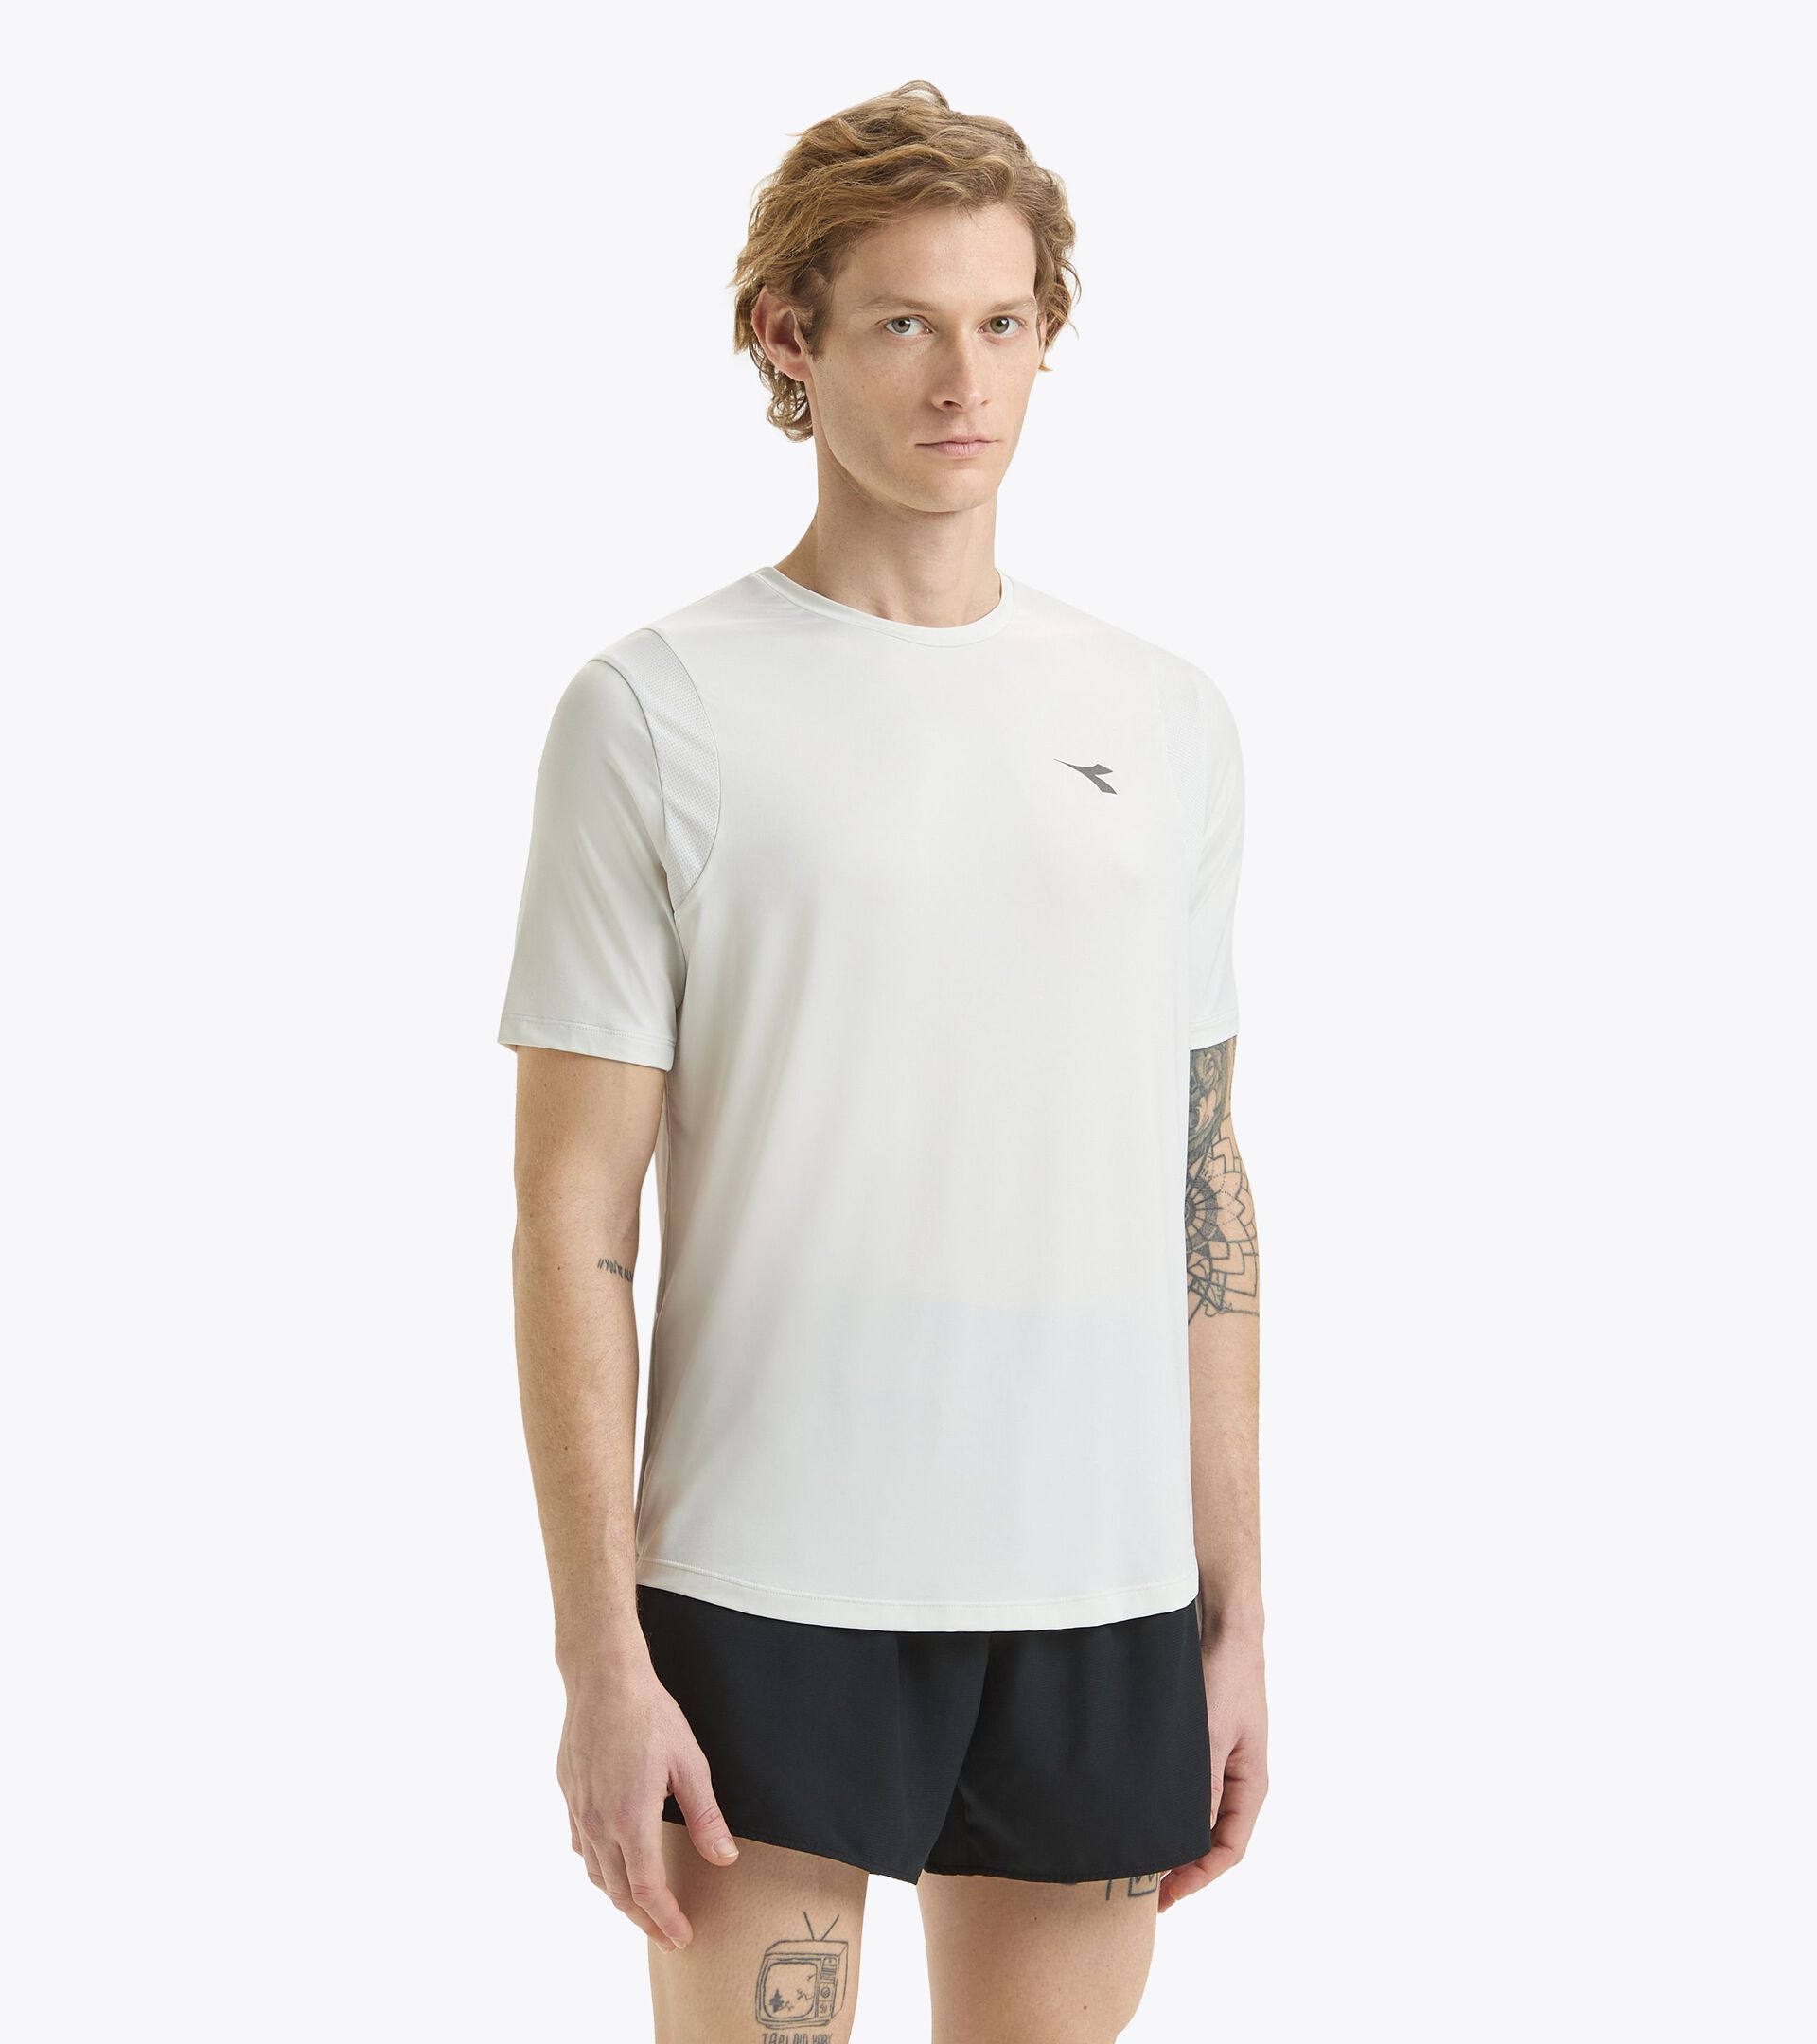 Camiseta de running - Hombre SS T-SHIRT TECH RUN CREW CO APENAS AZUL - Diadora